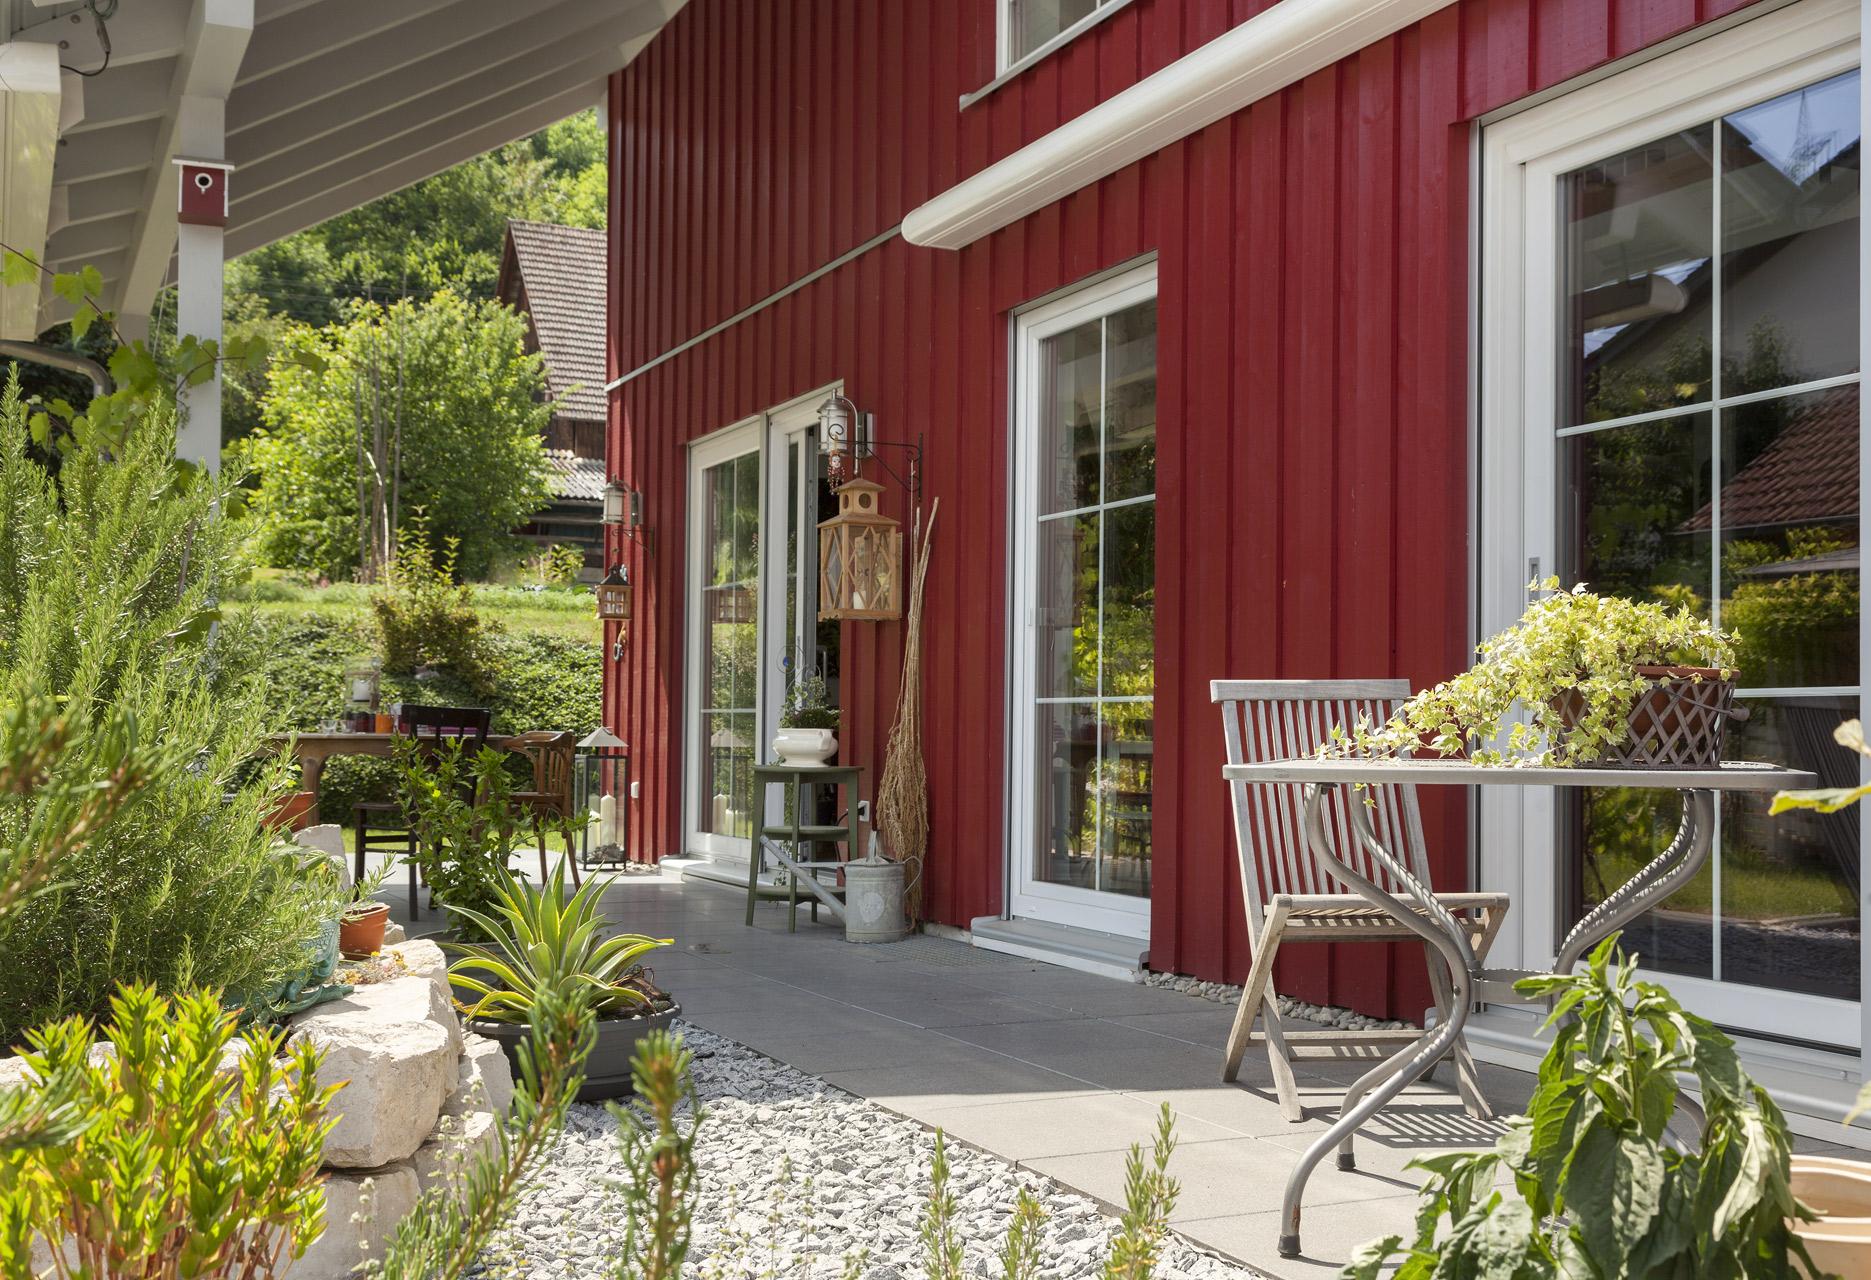 Fertighaus mit roter Holzverschalung und schön gestalteter Terrasse